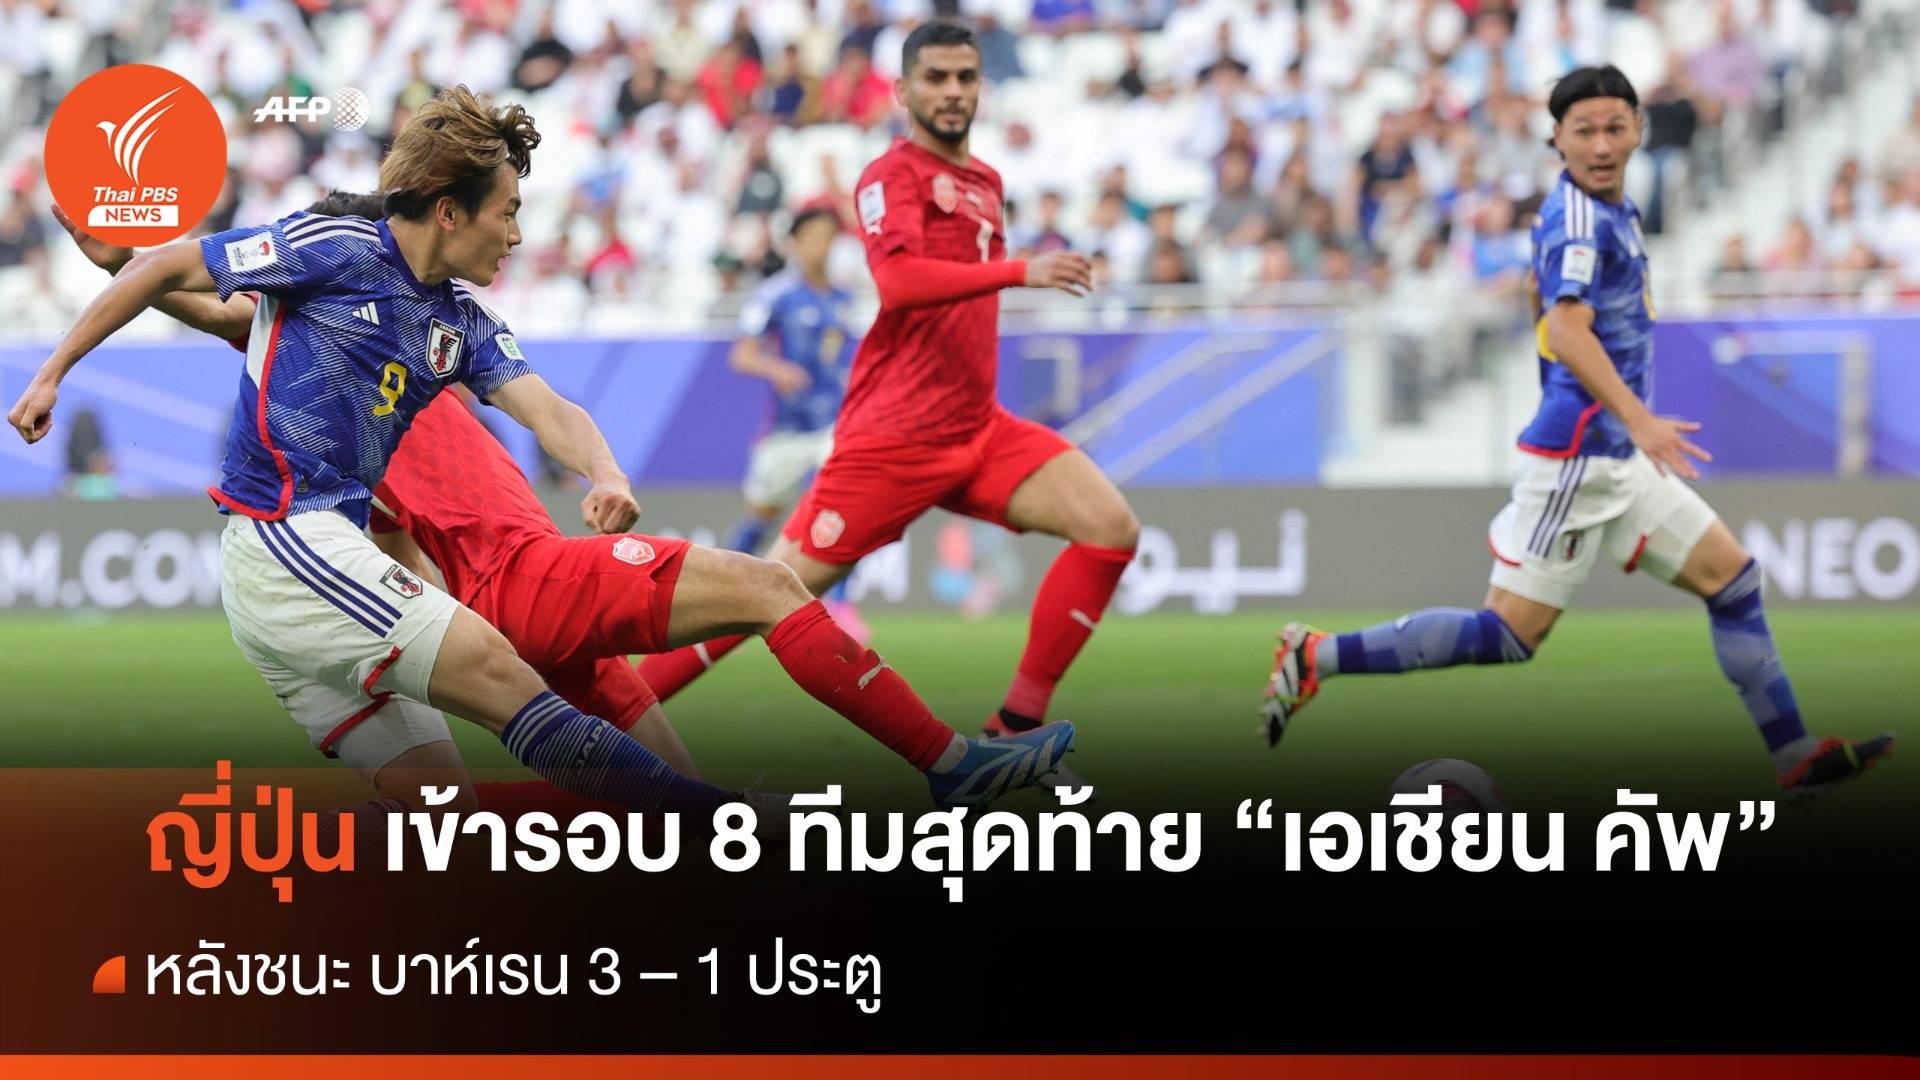 ญี่ปุ่น ชนะ บาห์เรน 3-1 เข้ารอบ 8 ทีมสุดท้าย "เอเชียน คัพ"